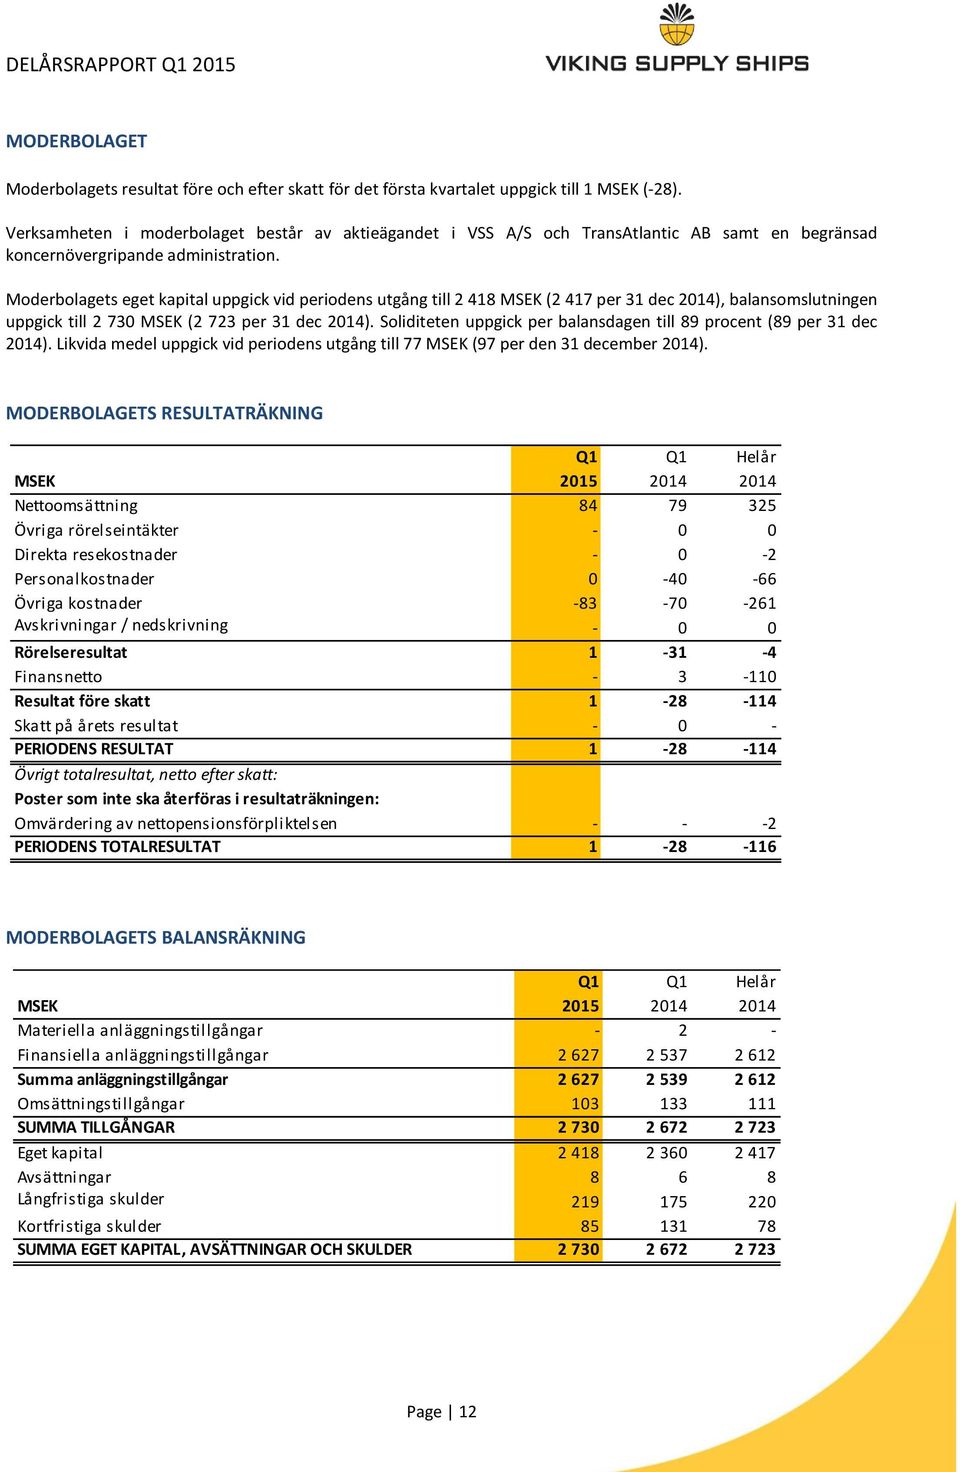 Moderbolagets eget kapital uppgick vid periodens utgång till 2 418 MSEK (2 417 per 31 dec 2014), balansomslutningen uppgick till 2 730 MSEK (2 723 per 31 dec 2014).